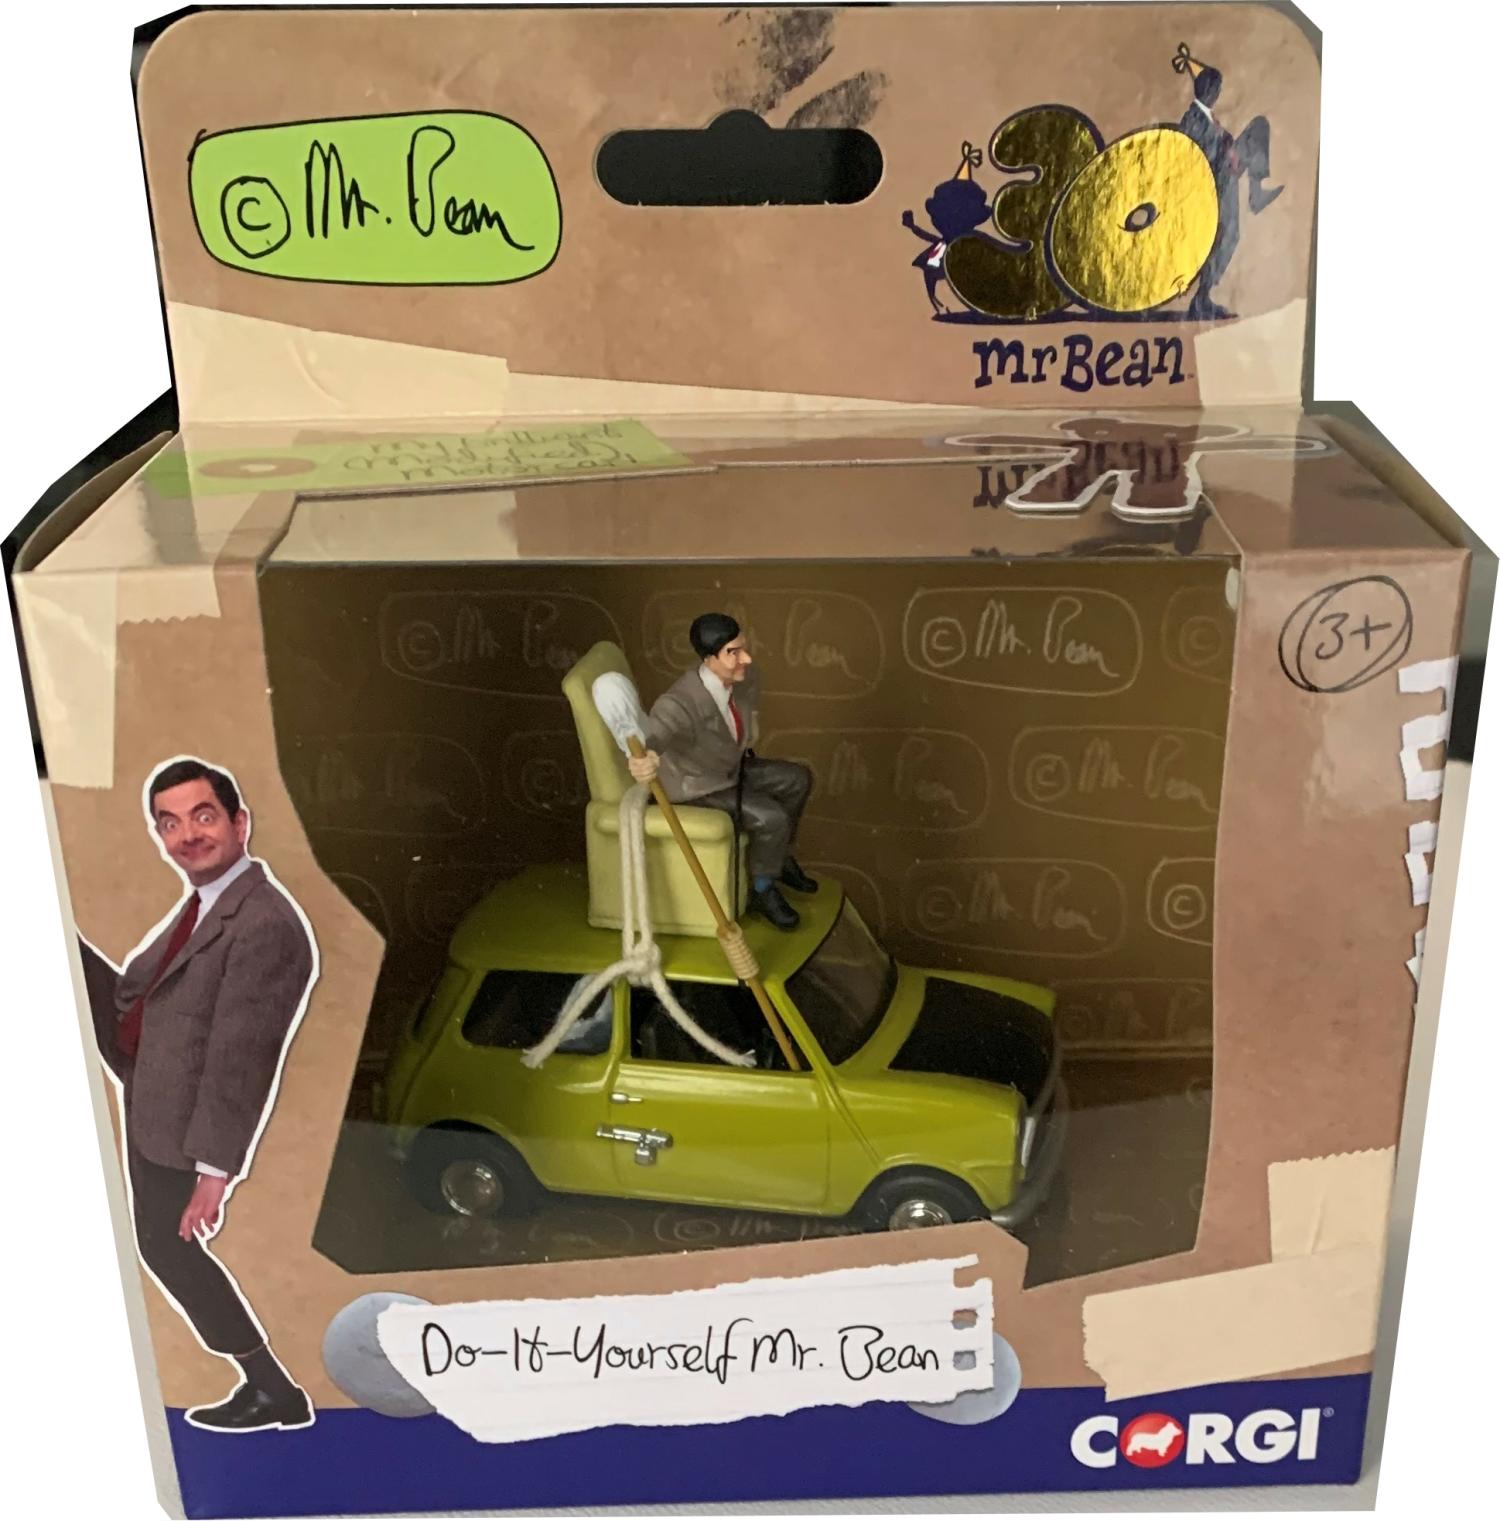 Mr Bean's Mini 'Do-It-Yourself Mr. Bean? 1:36 scale model from corgi